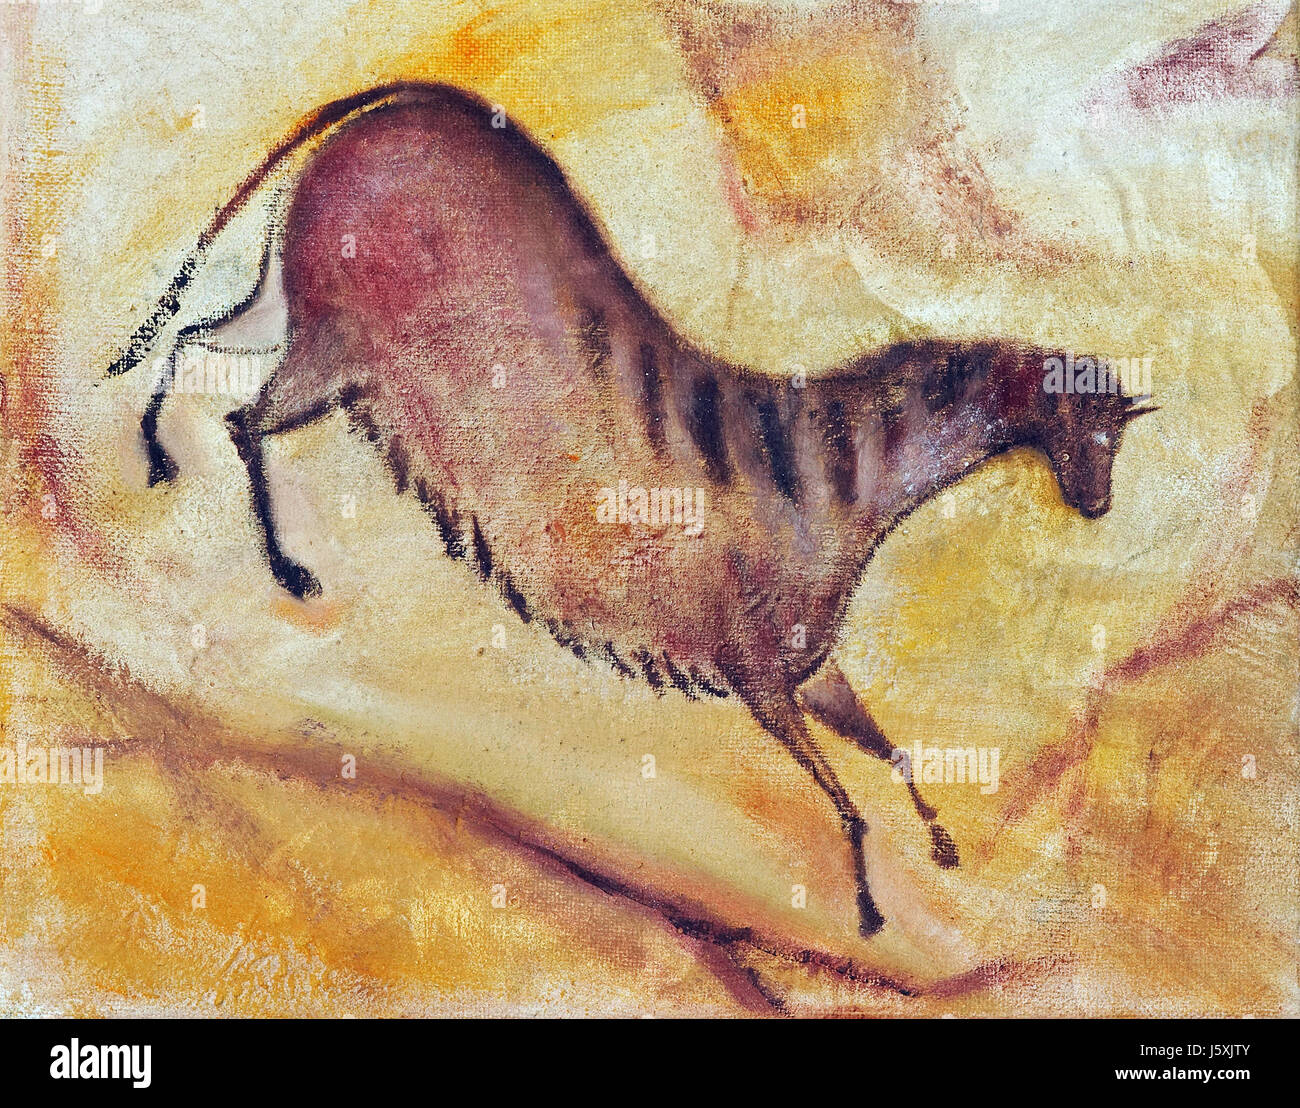 Horse Cave art peinture huile fine art visuel horse cave painting illustration Banque D'Images